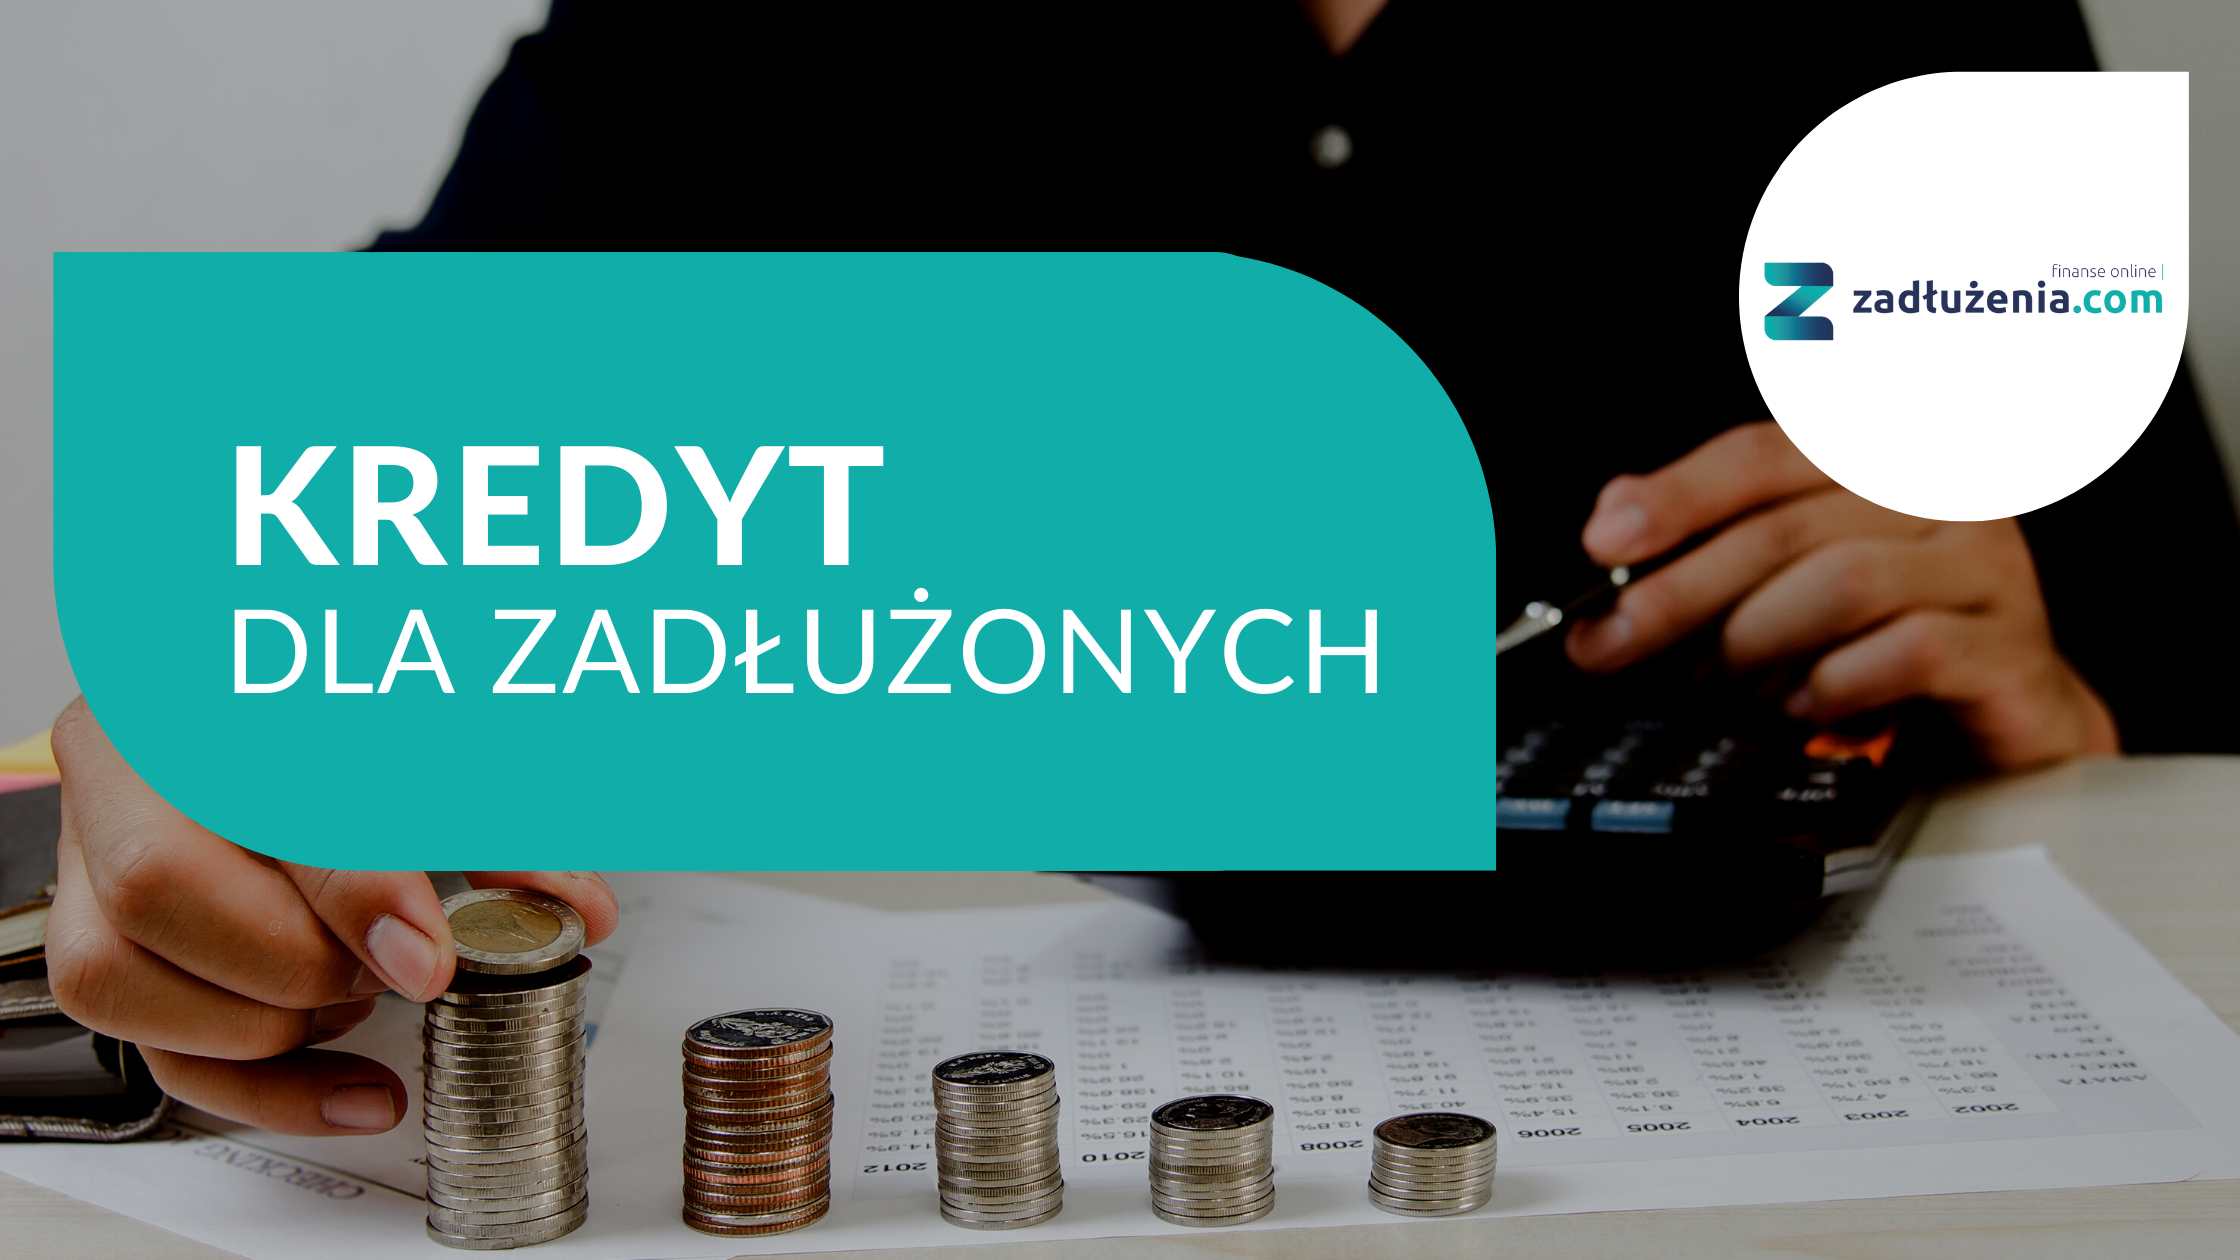 Kredyt dla zadłużonych - pożyczki bez BIK do 200 000 zł. Ranking i opinie